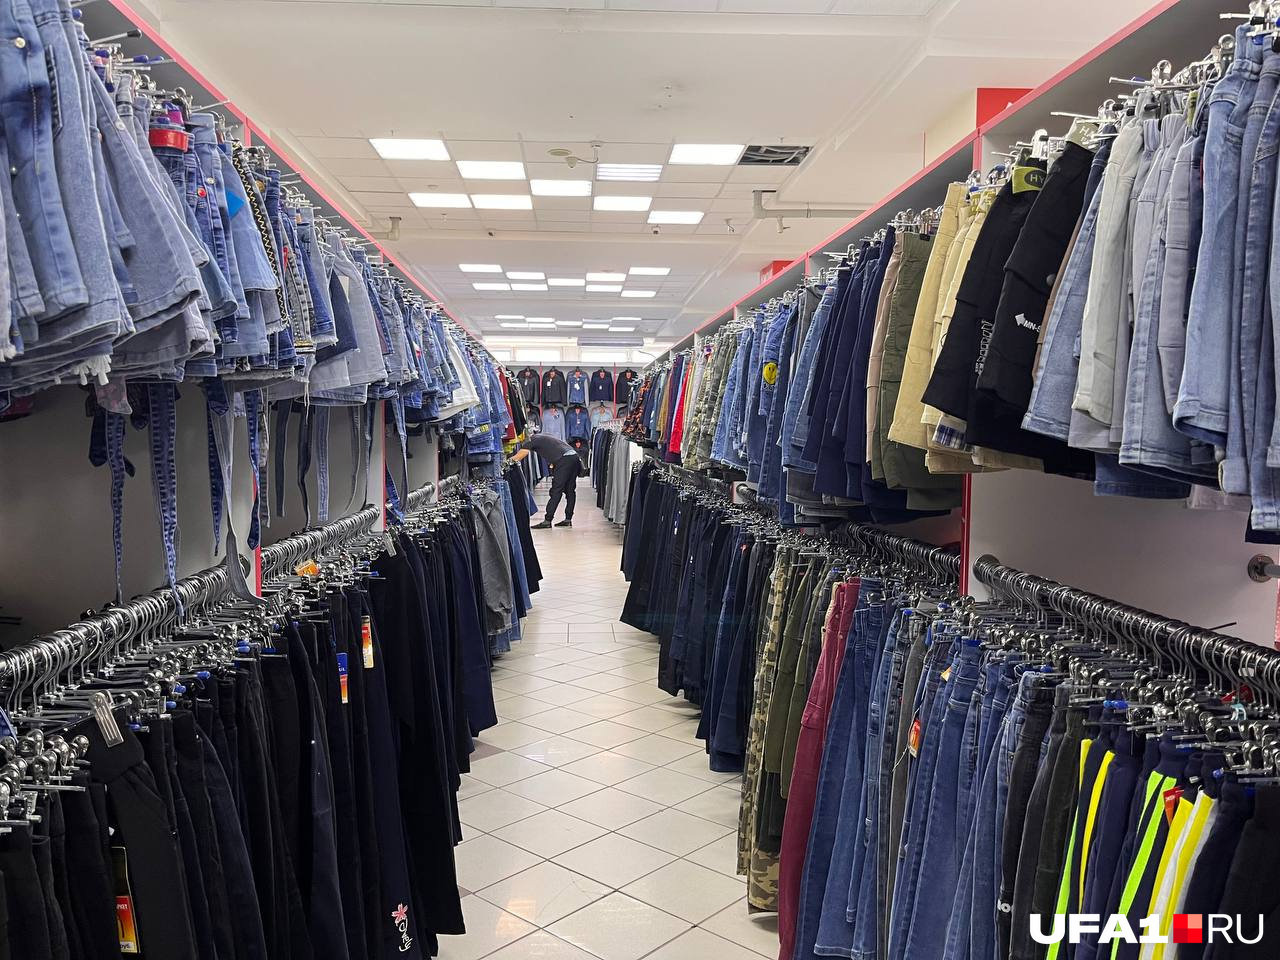 Аналогичные ряды одежды в магазине в универмаге «Уфа»